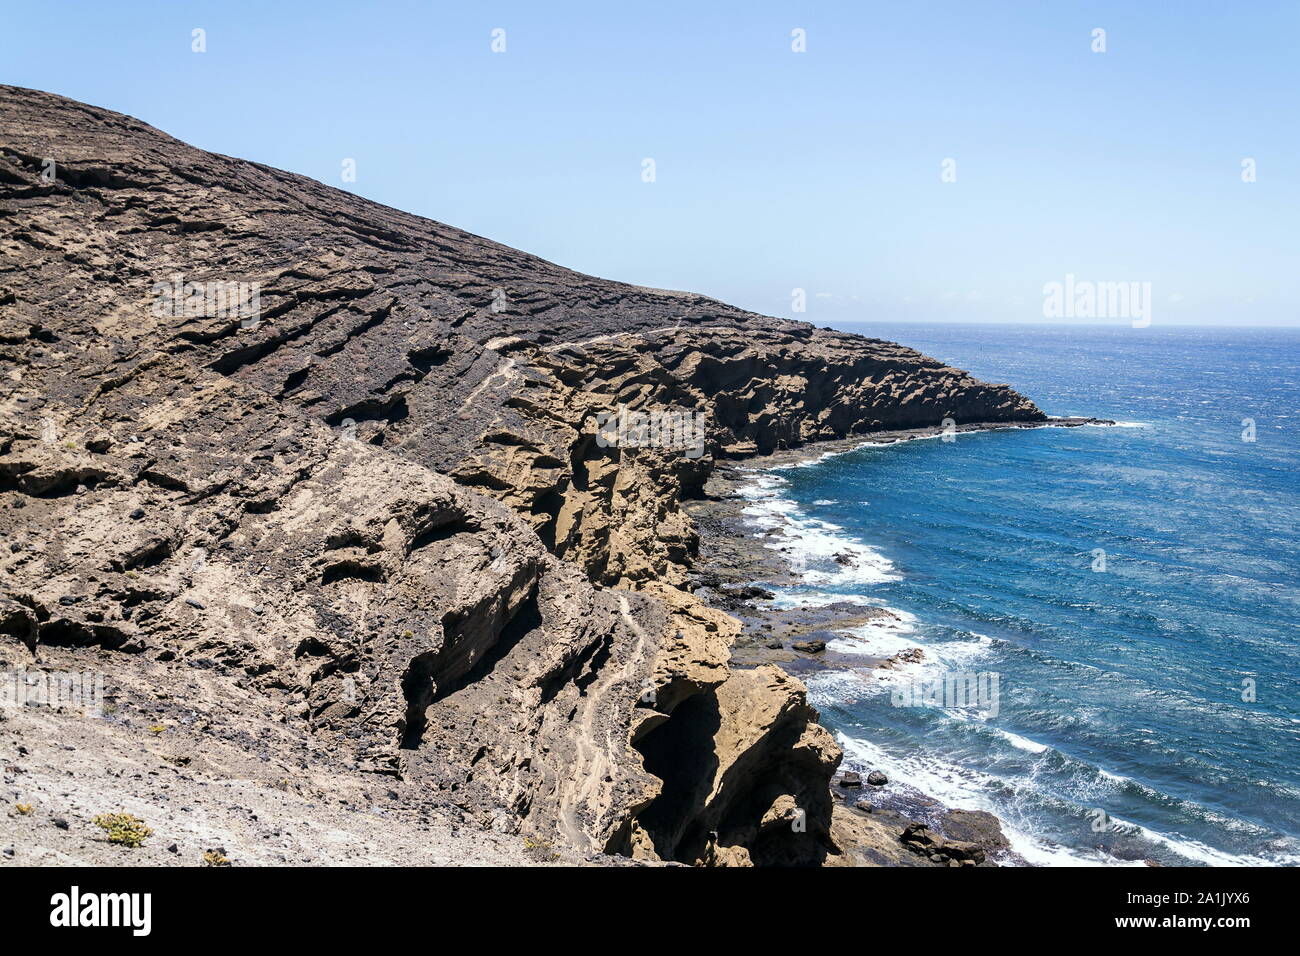 Olas rompiendo en espectaculares acantilados en la costa sur, Montana Montaña Pelada, Tenerife, Islas Canarias, España, un día soleado de verano Foto de stock